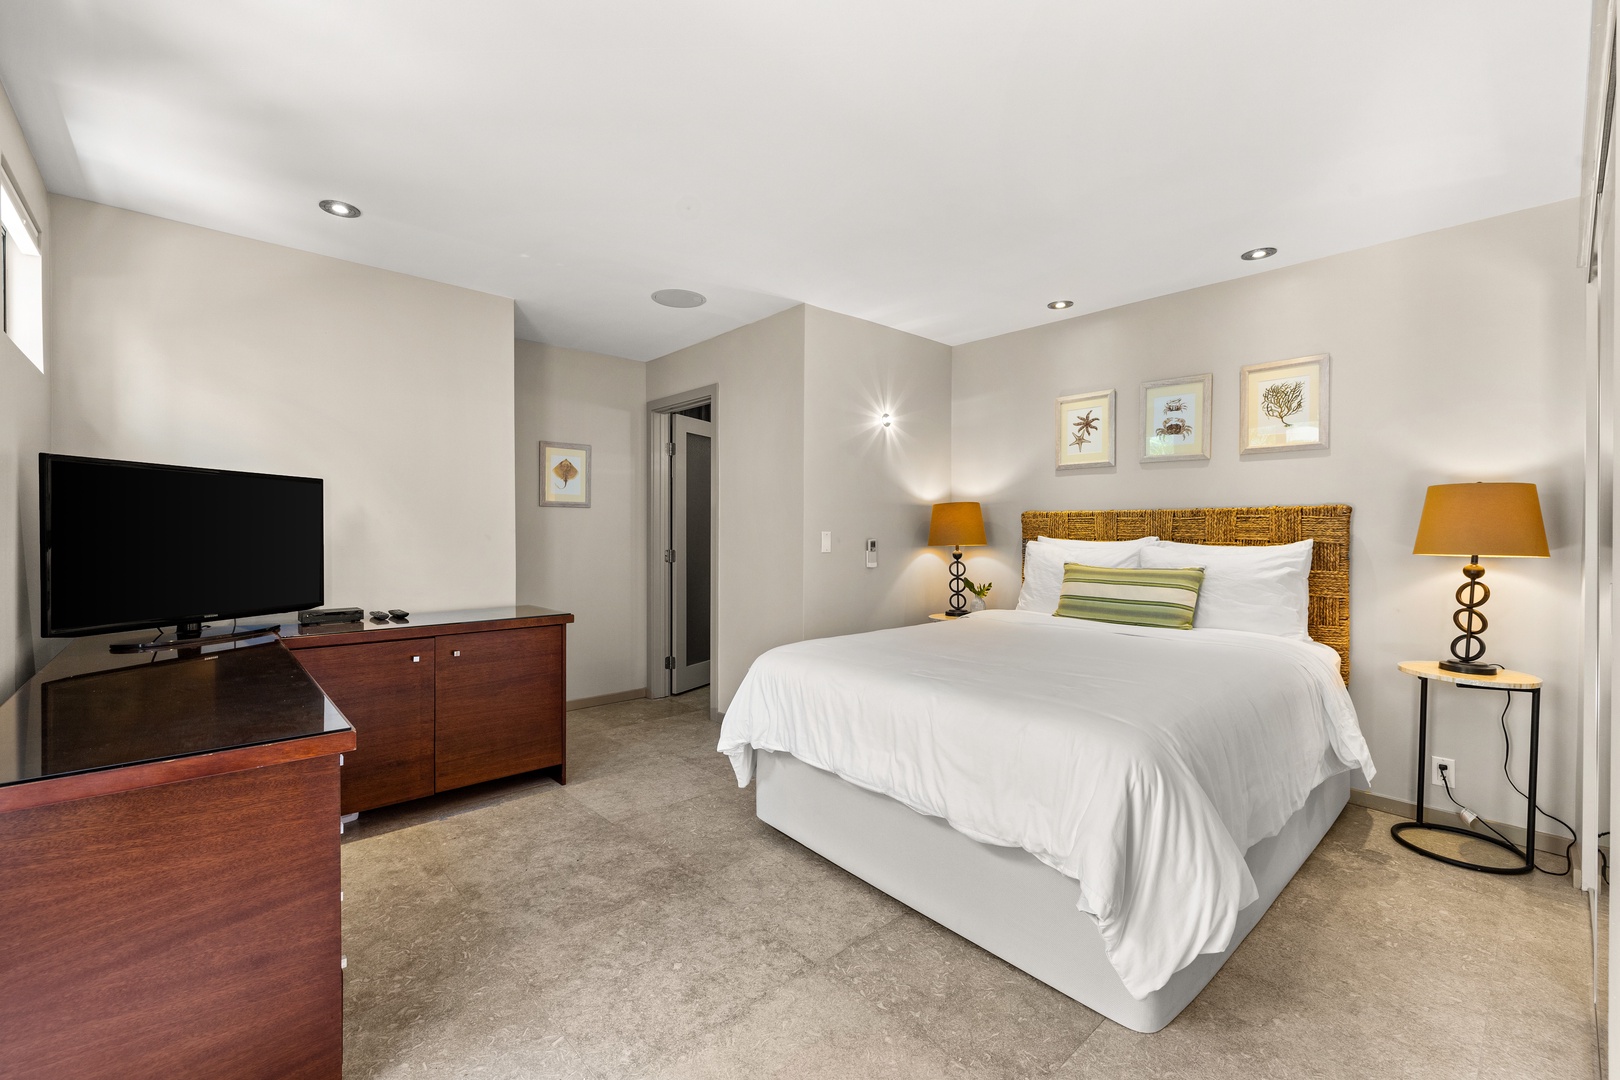 Honolulu Vacation Rentals, Villa Luana - Bedroom Five, on main level, with en suite bathroom.